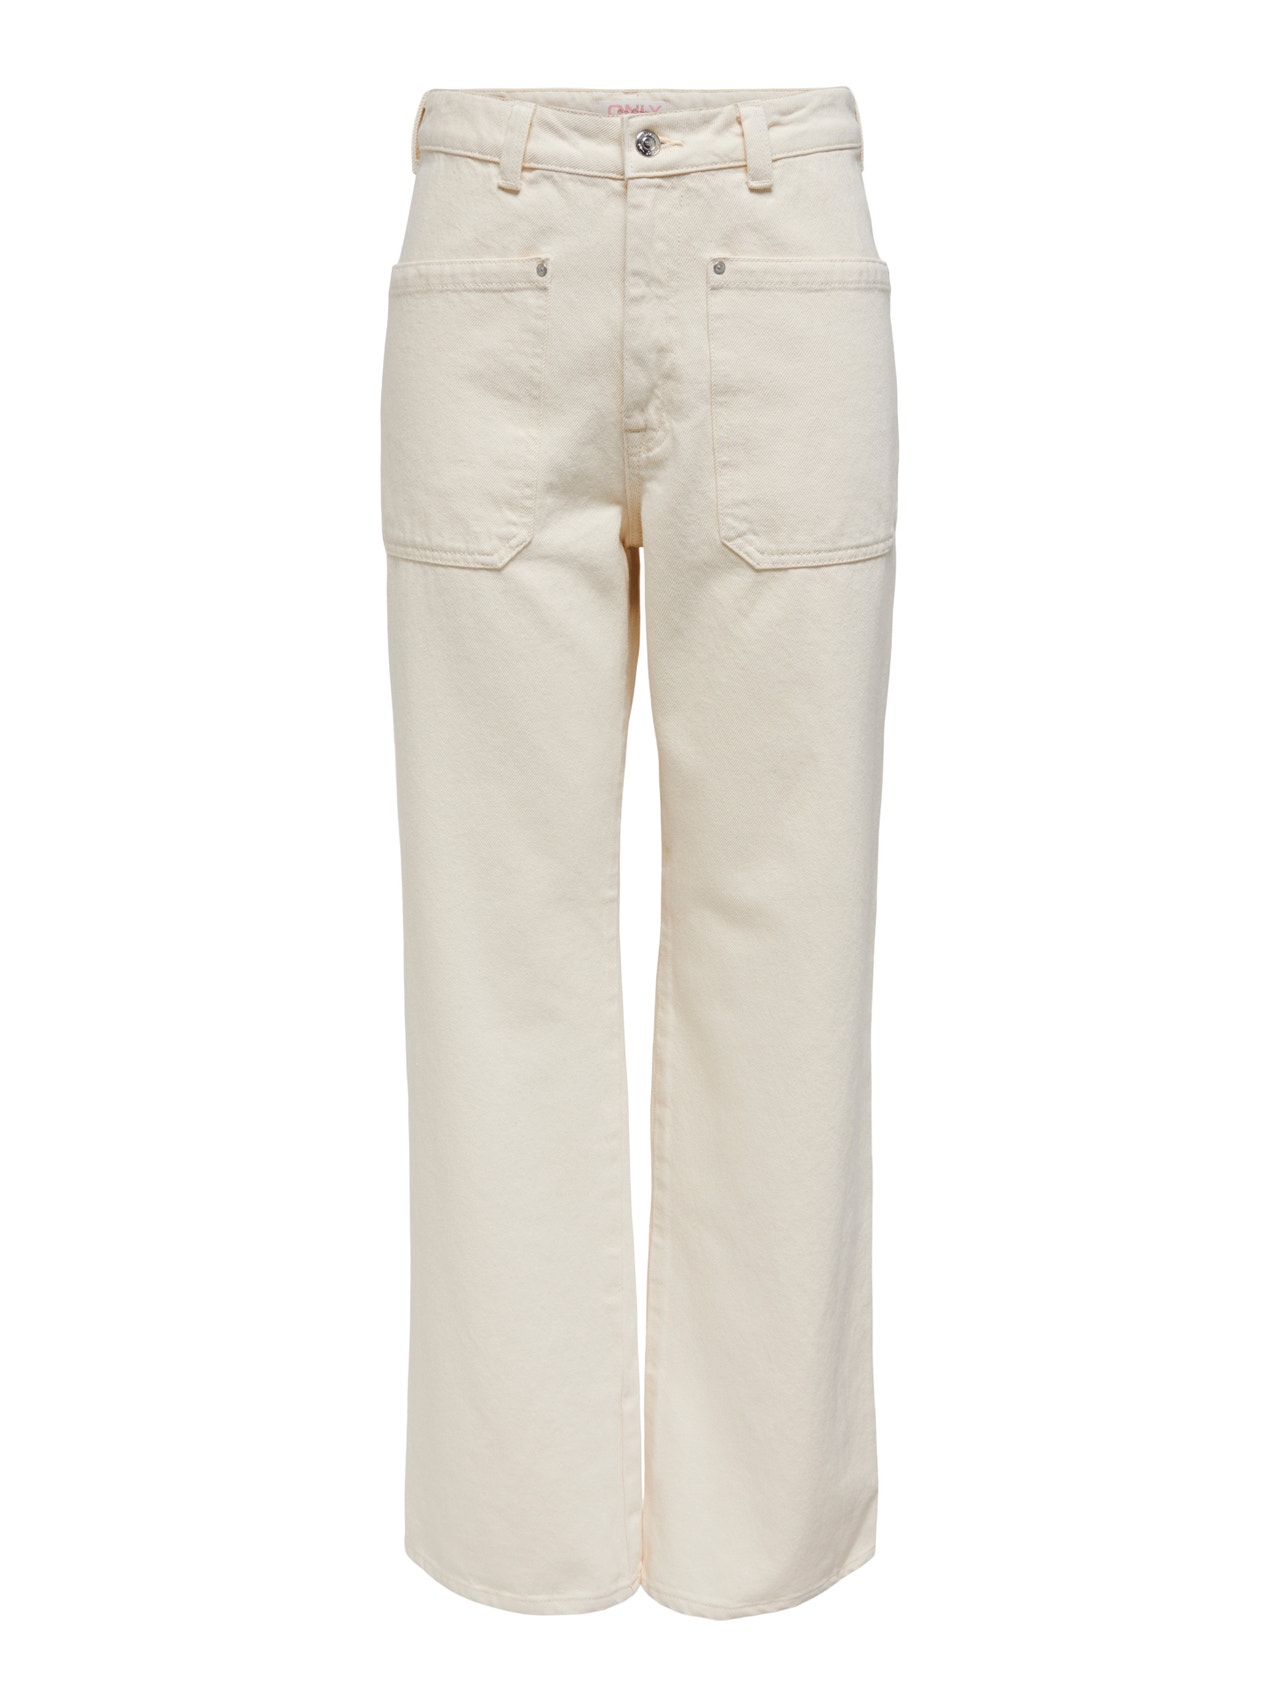 ONLY onlheath high waist wide jeans -Ecru - 15297206